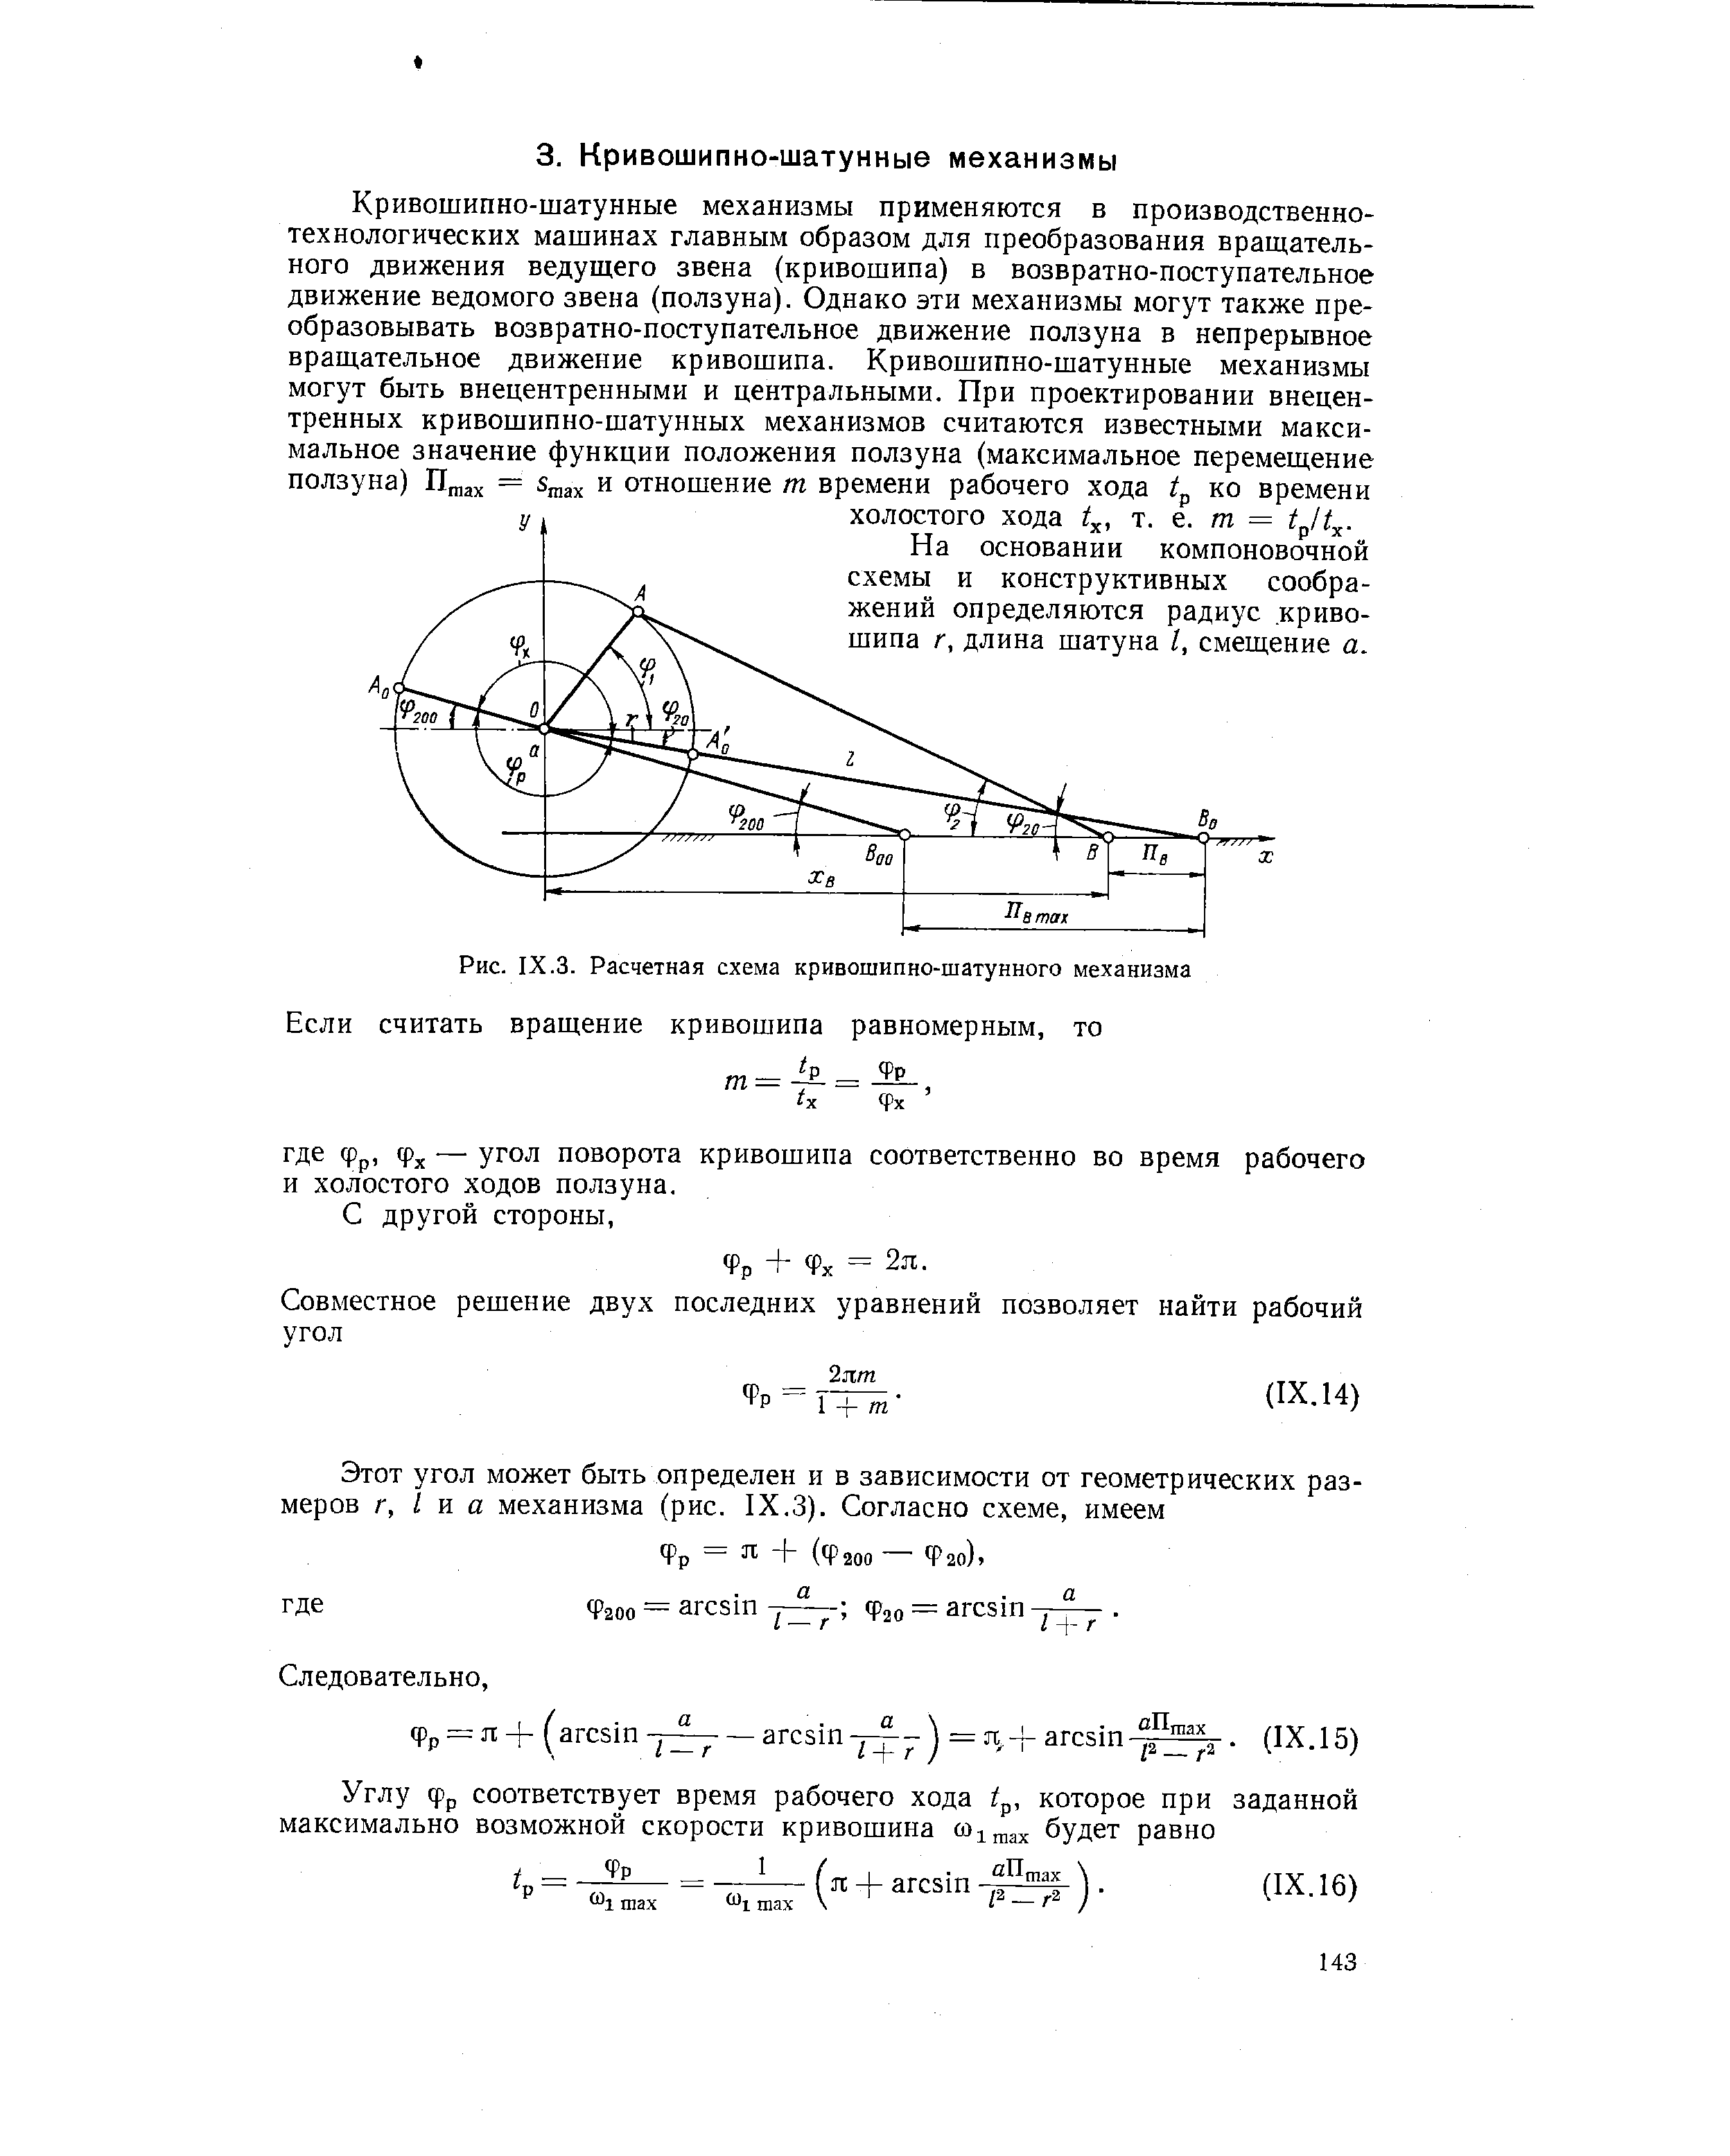 Рис. IX.3. Расчетная схема кривошипно-шатунного механизма
